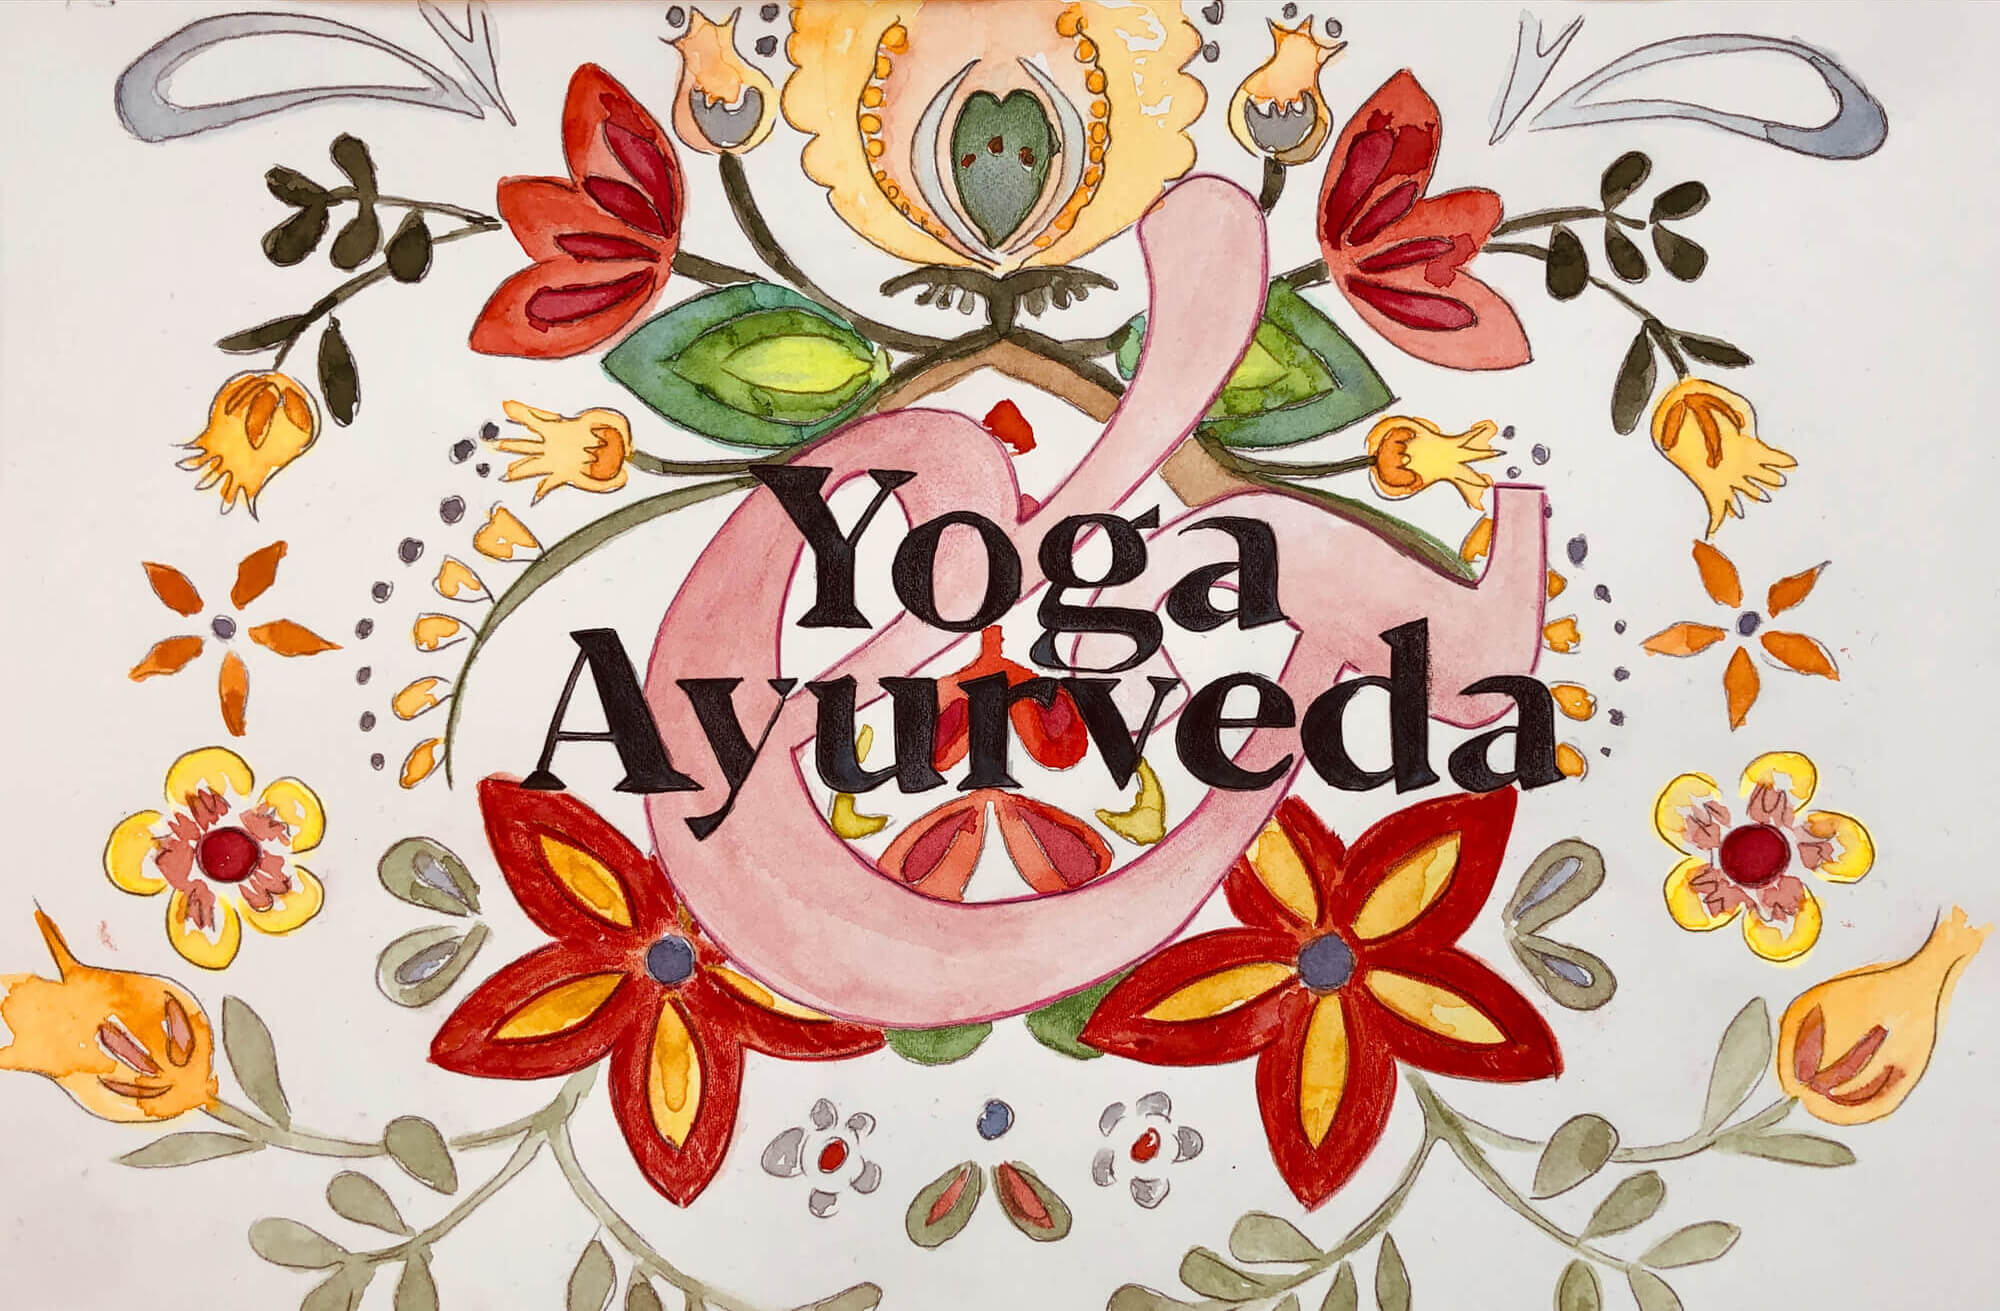 Yoga und Ayurveda, passt das denn zusammen? 